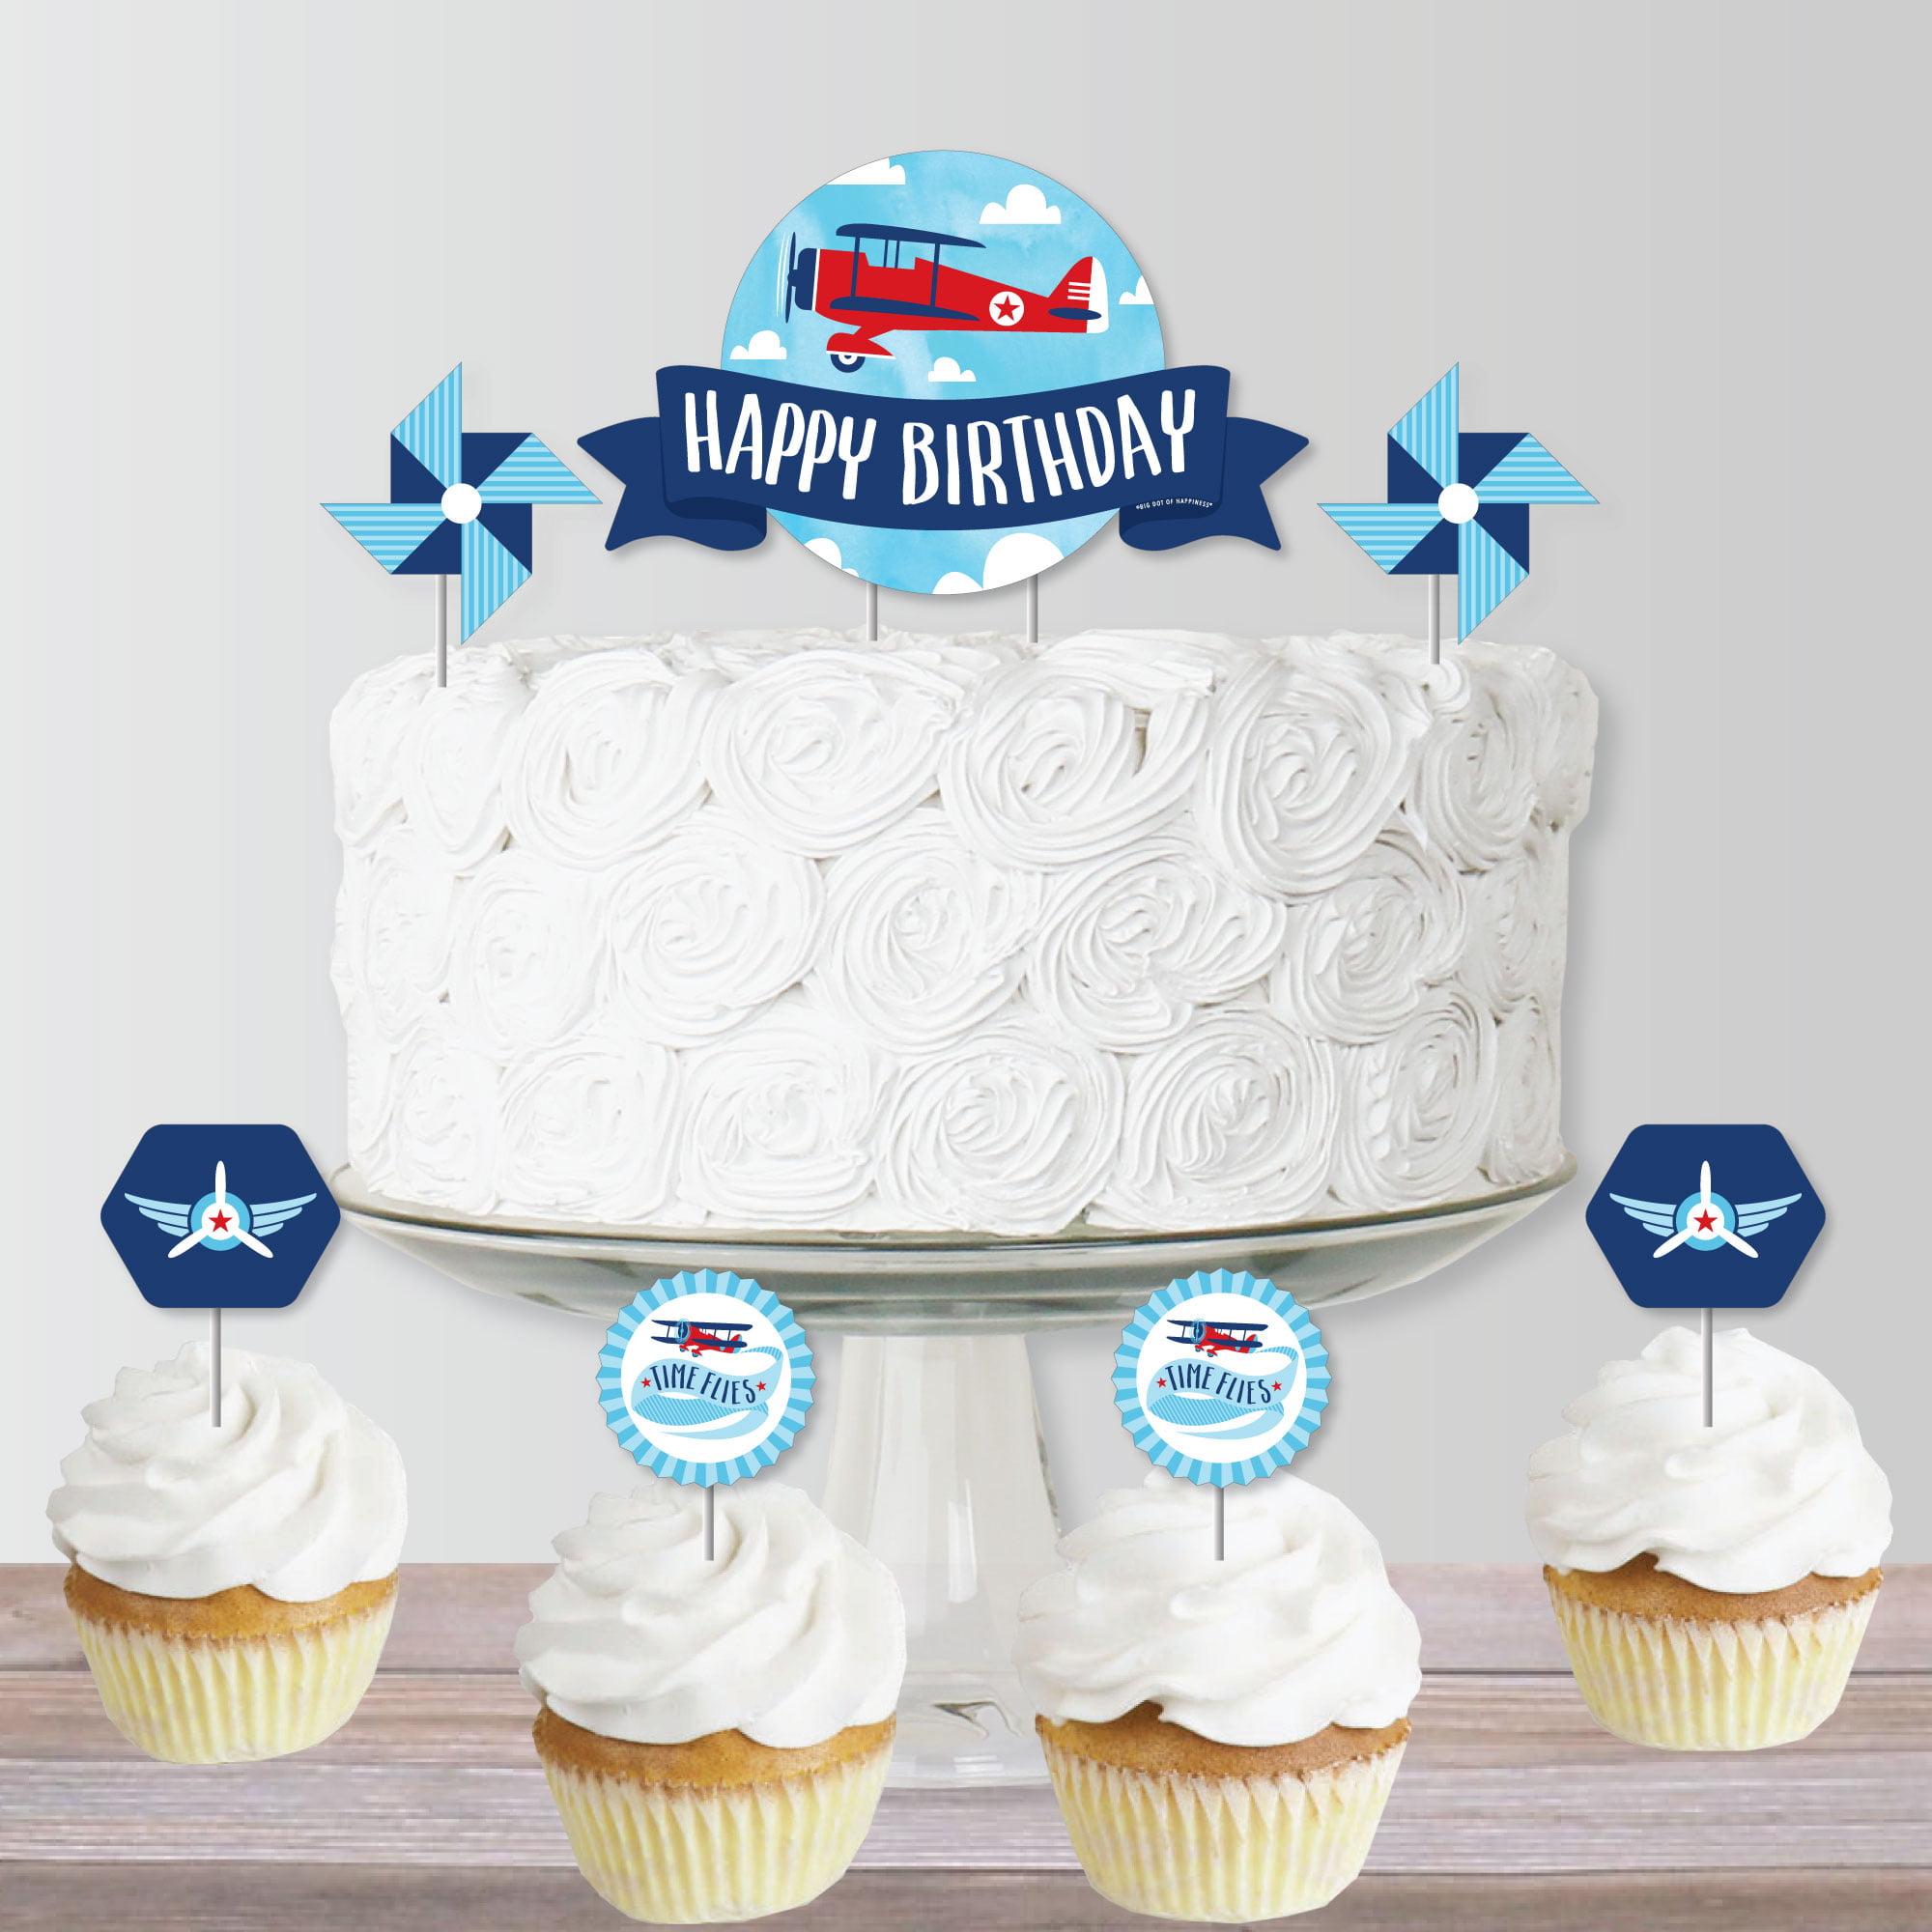 Frank Vilt's Cakes - Happy birthday Timmy! #frankviltscakes #airplane # birthday #cake | Facebook